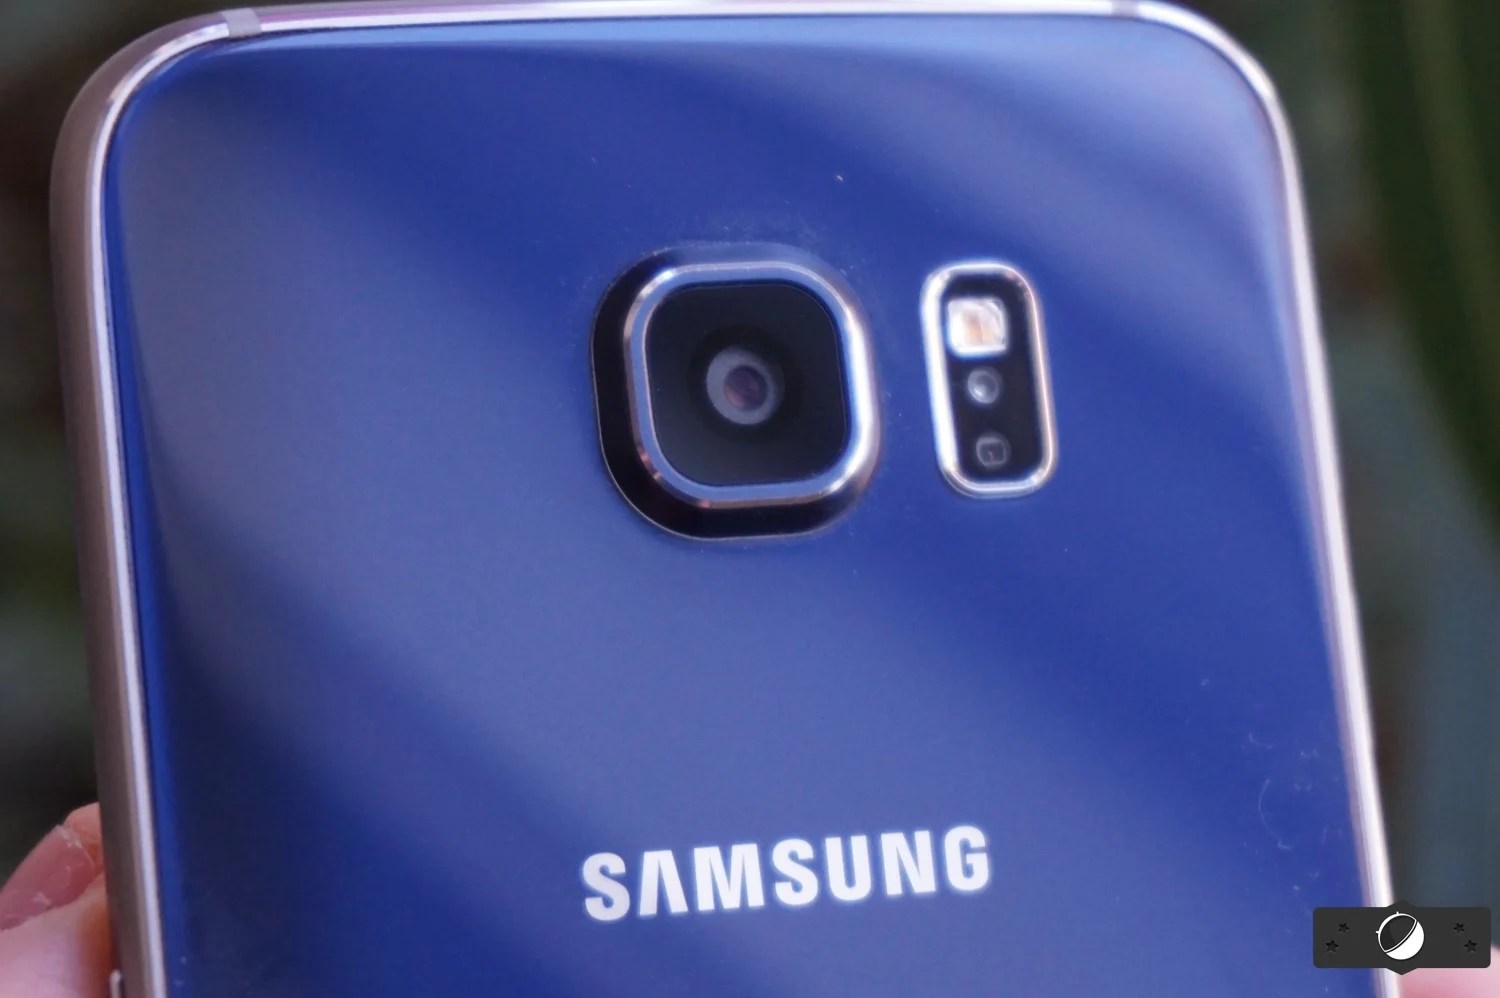 Samsung Galaxy S6 : Android 5.1.1 disponible en OTA pour améliorer l’appareil photo